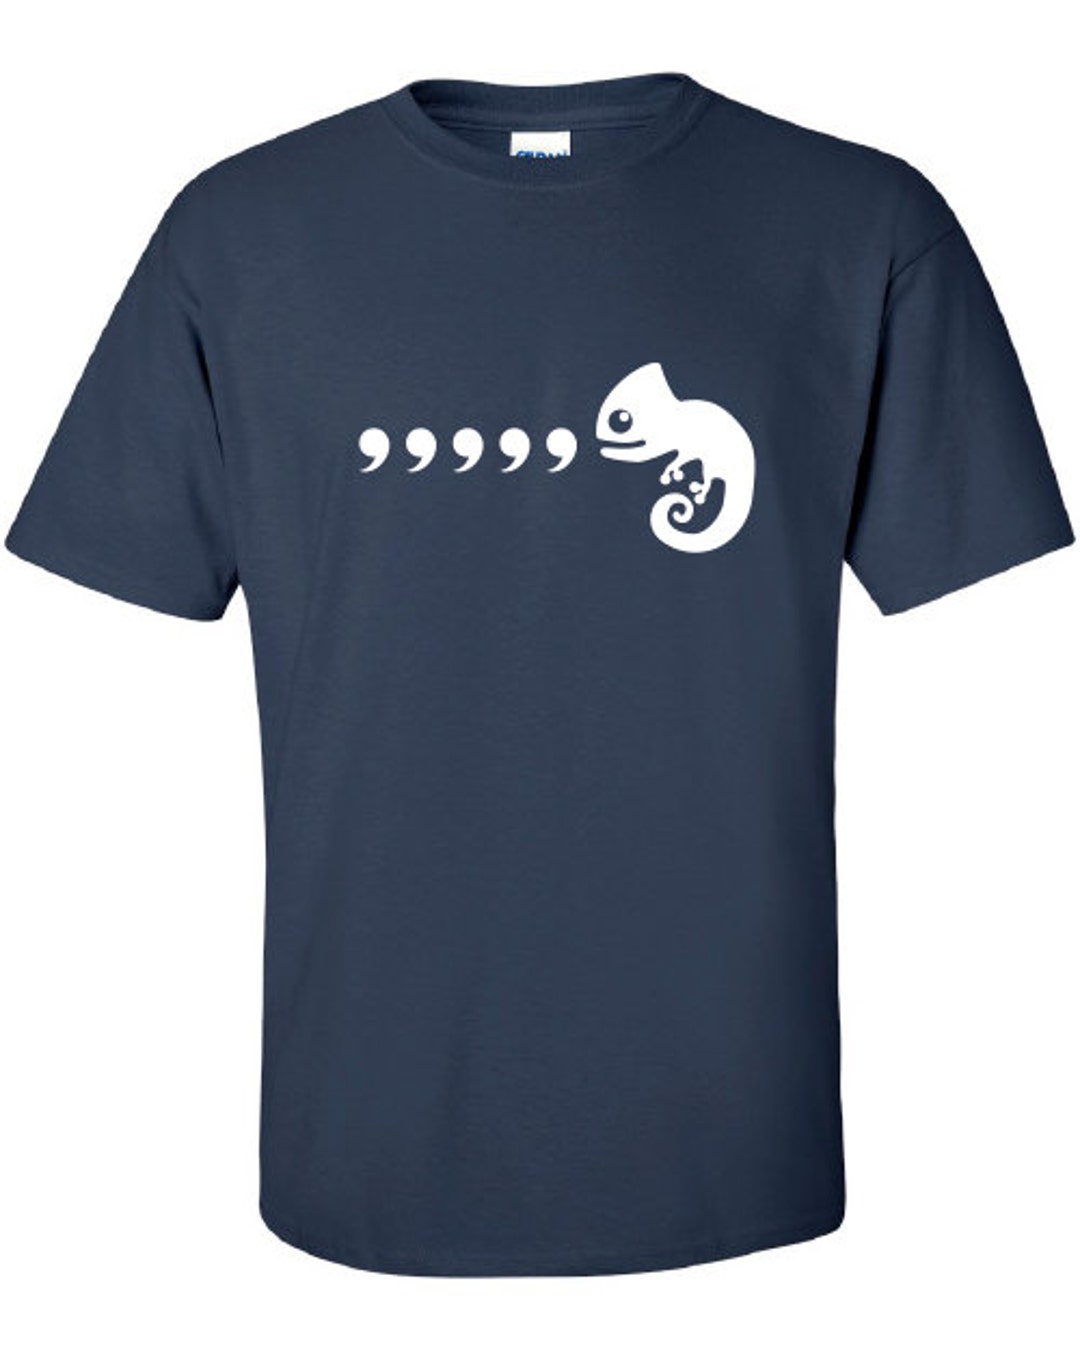 Comma Comma Chameleon Karma Chameleon Parody T-shirt Funny Music Inspired  Tee ML-383 - Etsy